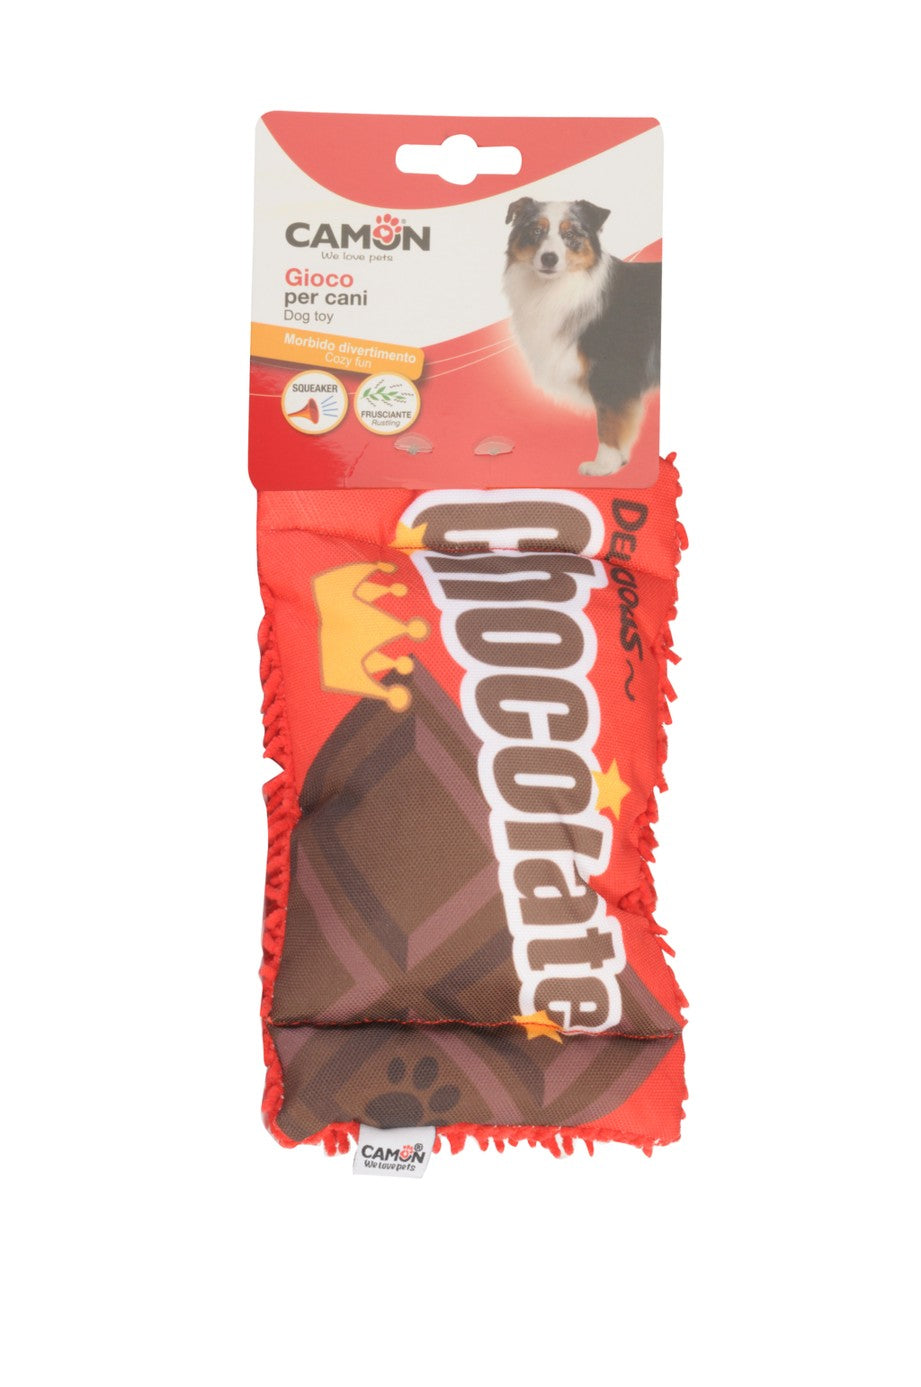 Camon Gioco per cani - Barretta di cioccolato frusciante e con squeaker - AH4163